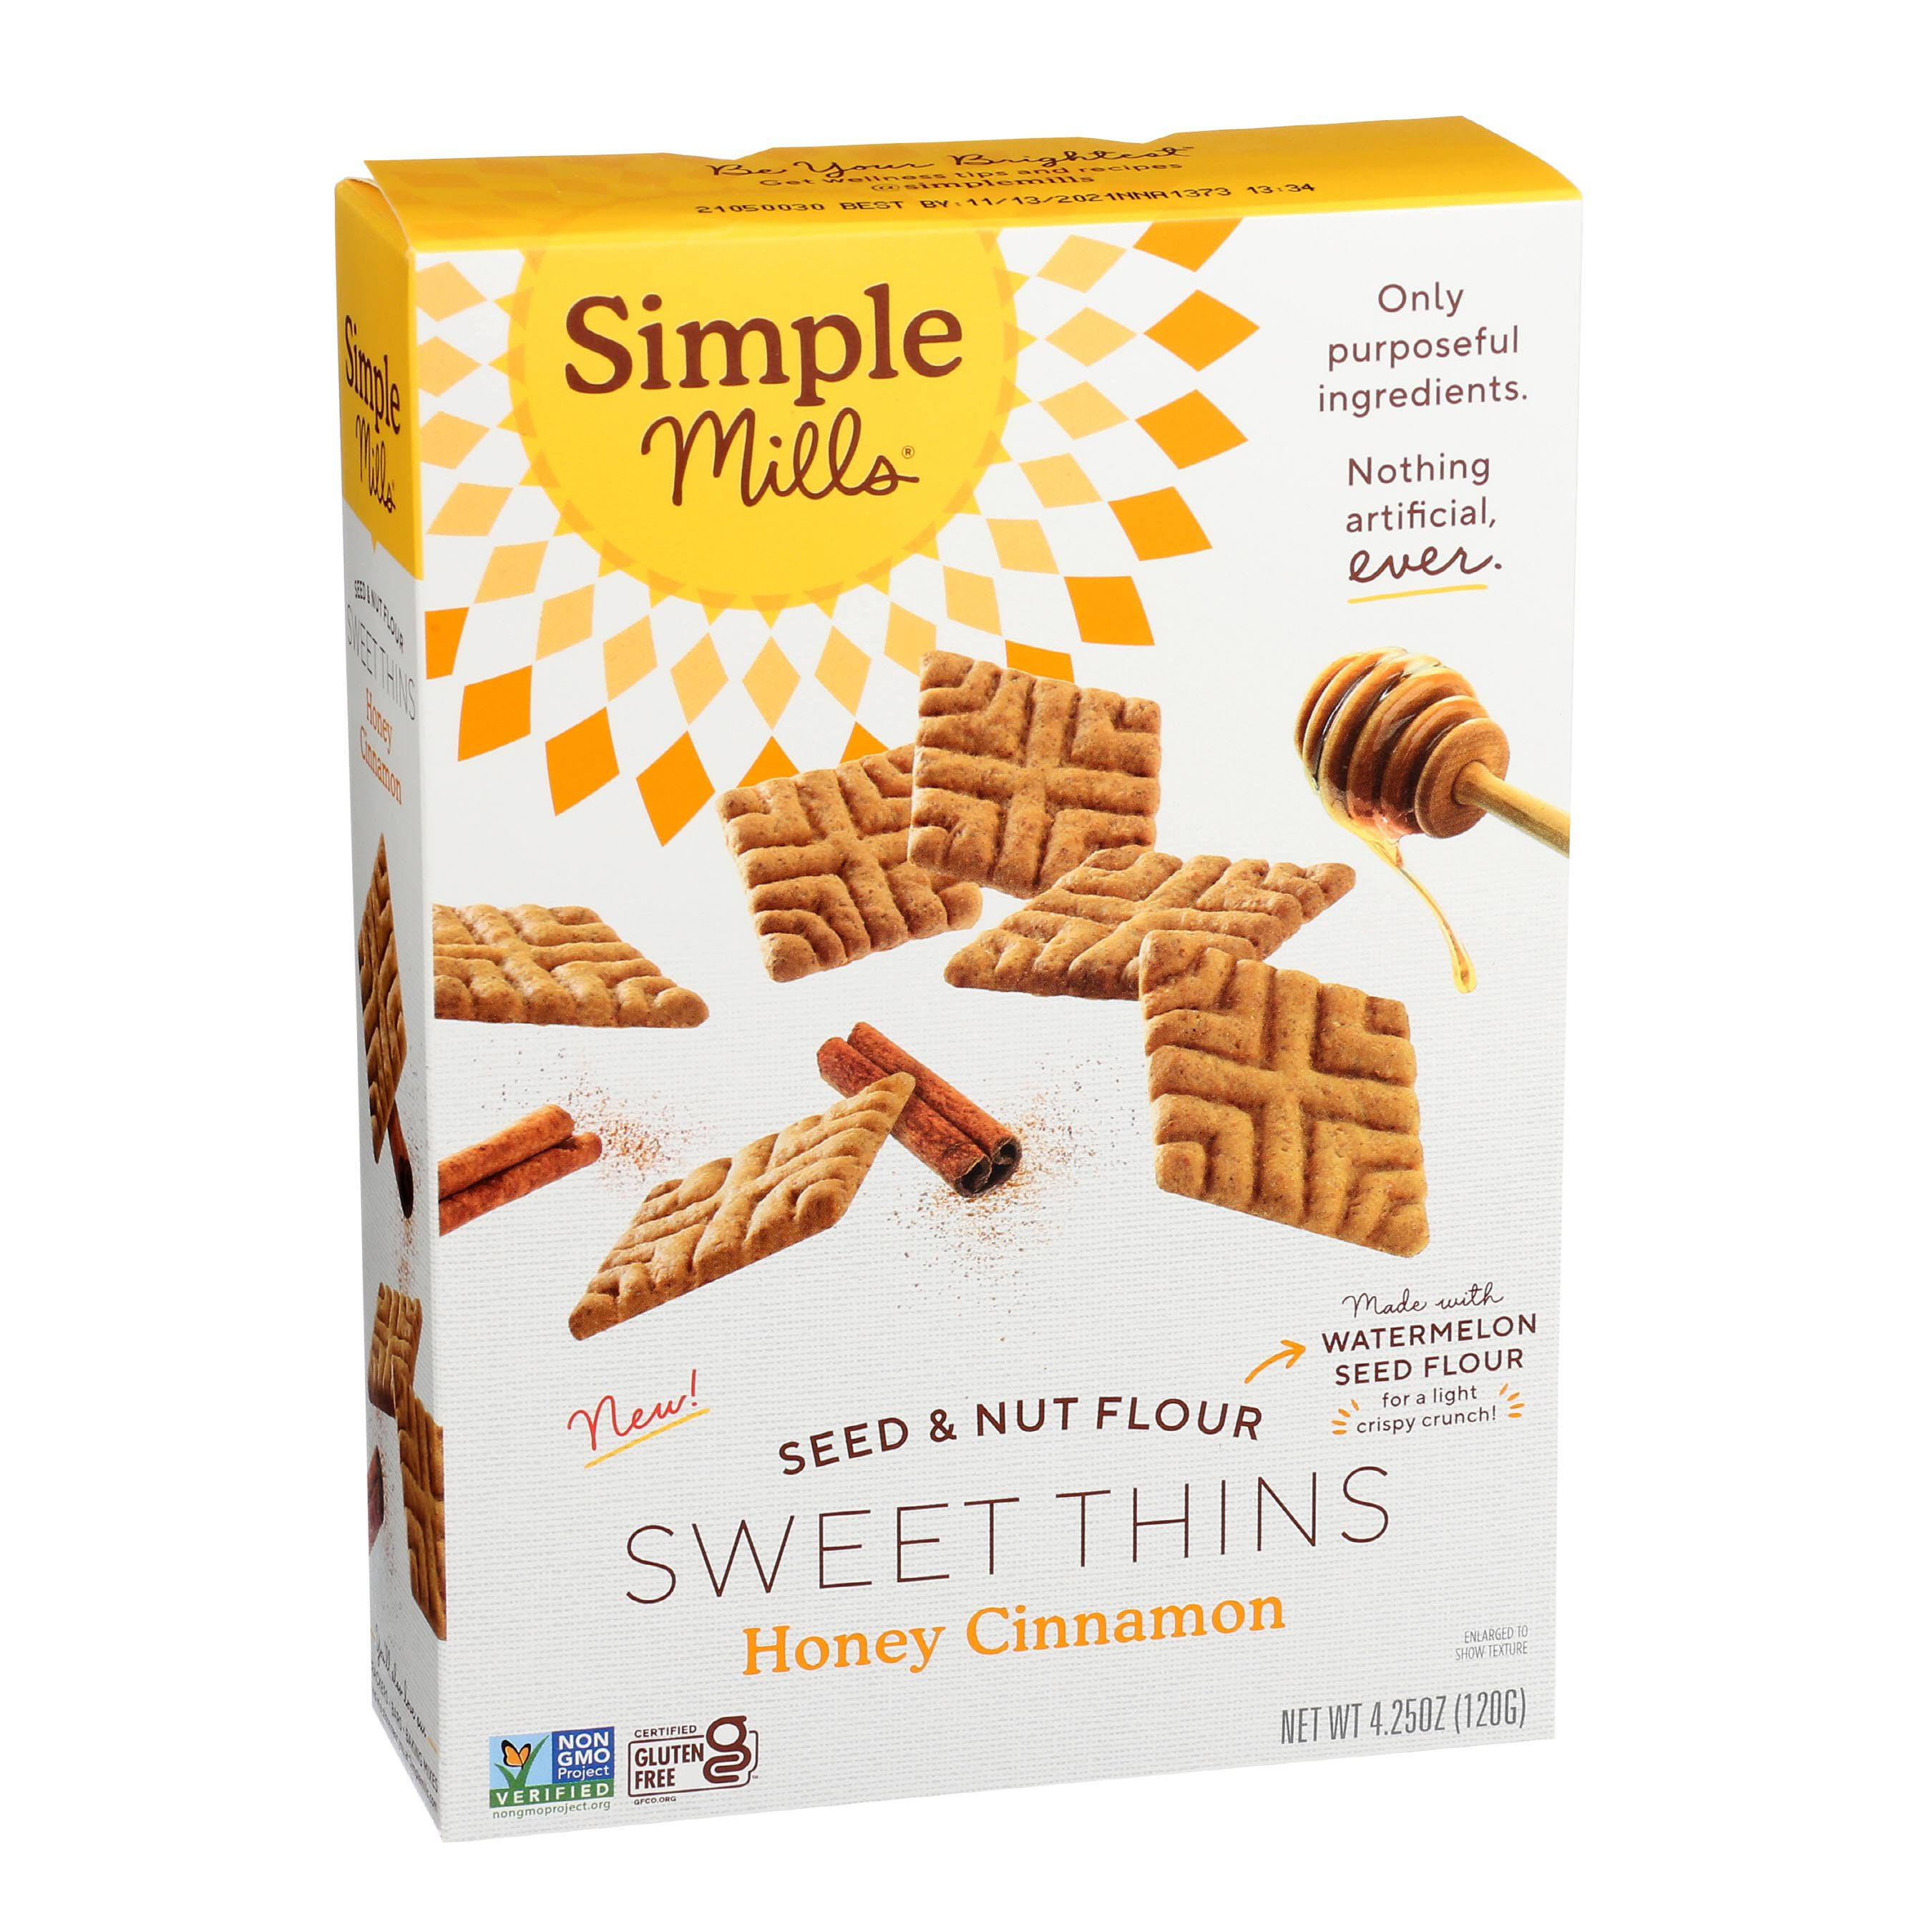 Simple Mills Seed & Nut Flour Sweet Thins Honey Cinnamon 4.25 oz (120 g)